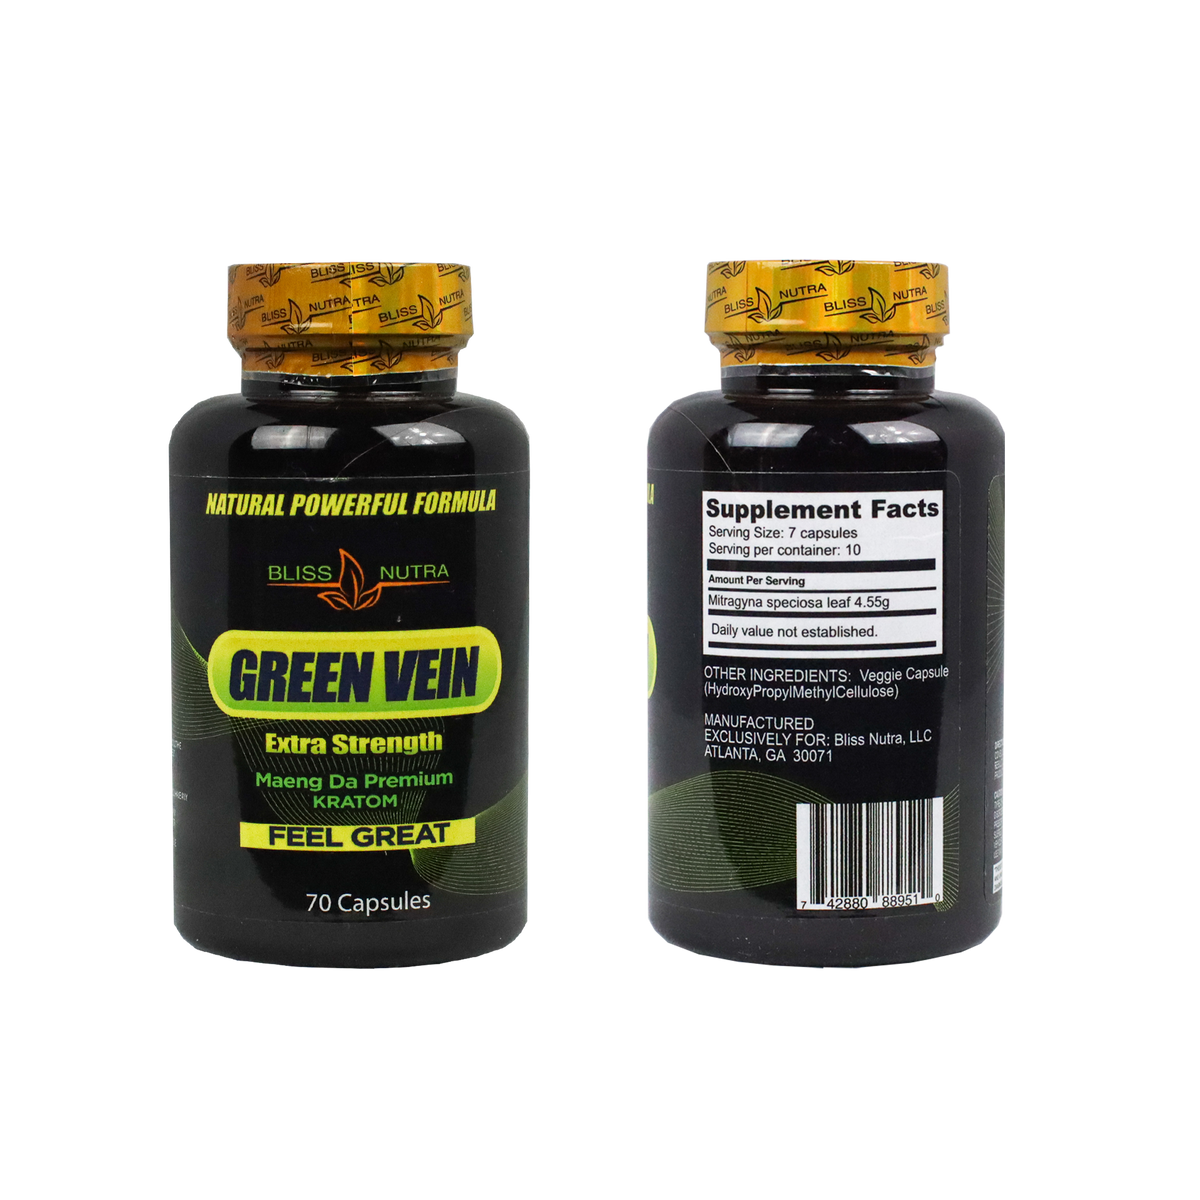 Green Vein Extra Strength Maeng Da Premium